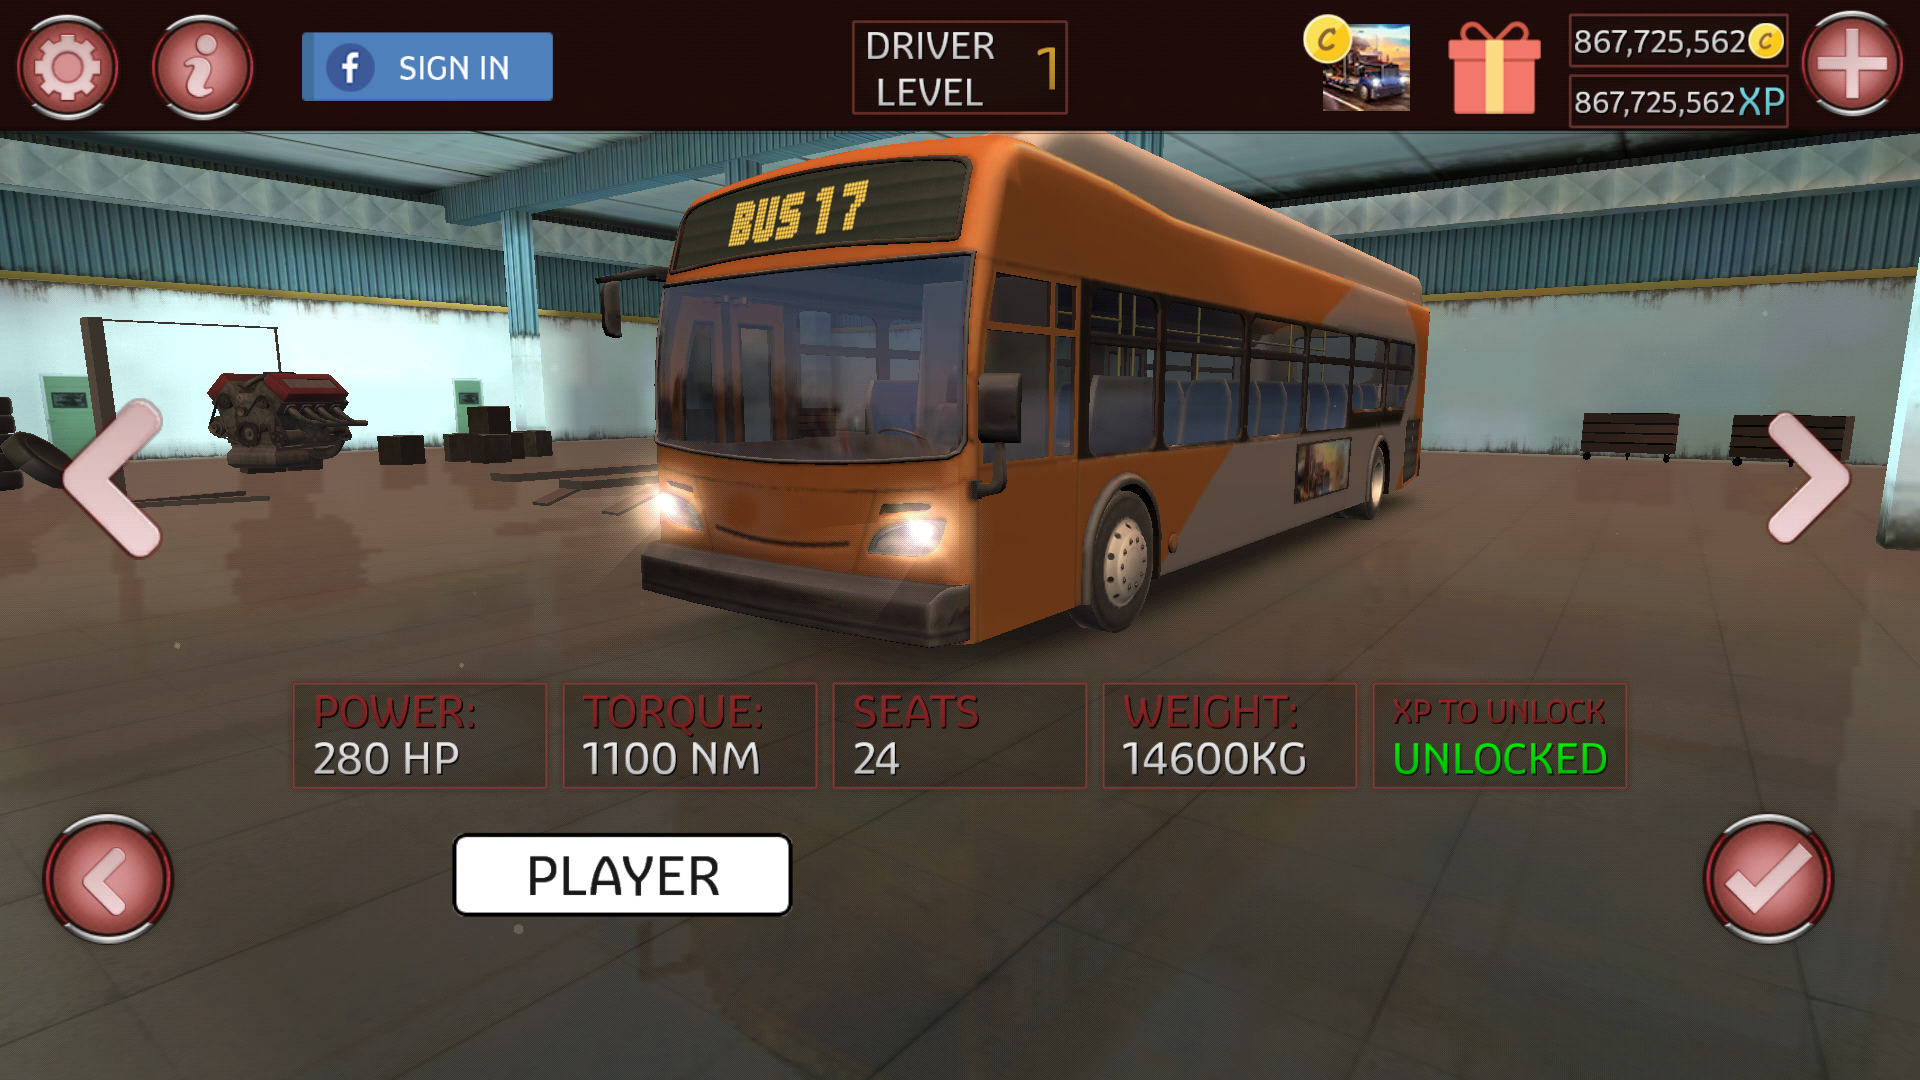 Автобус игра симулятор много денег. Bus симулятор 2017. Автобусы игры Bus Simulator много денег. Игры про русские автобусы. Симулятор русского автобуса.